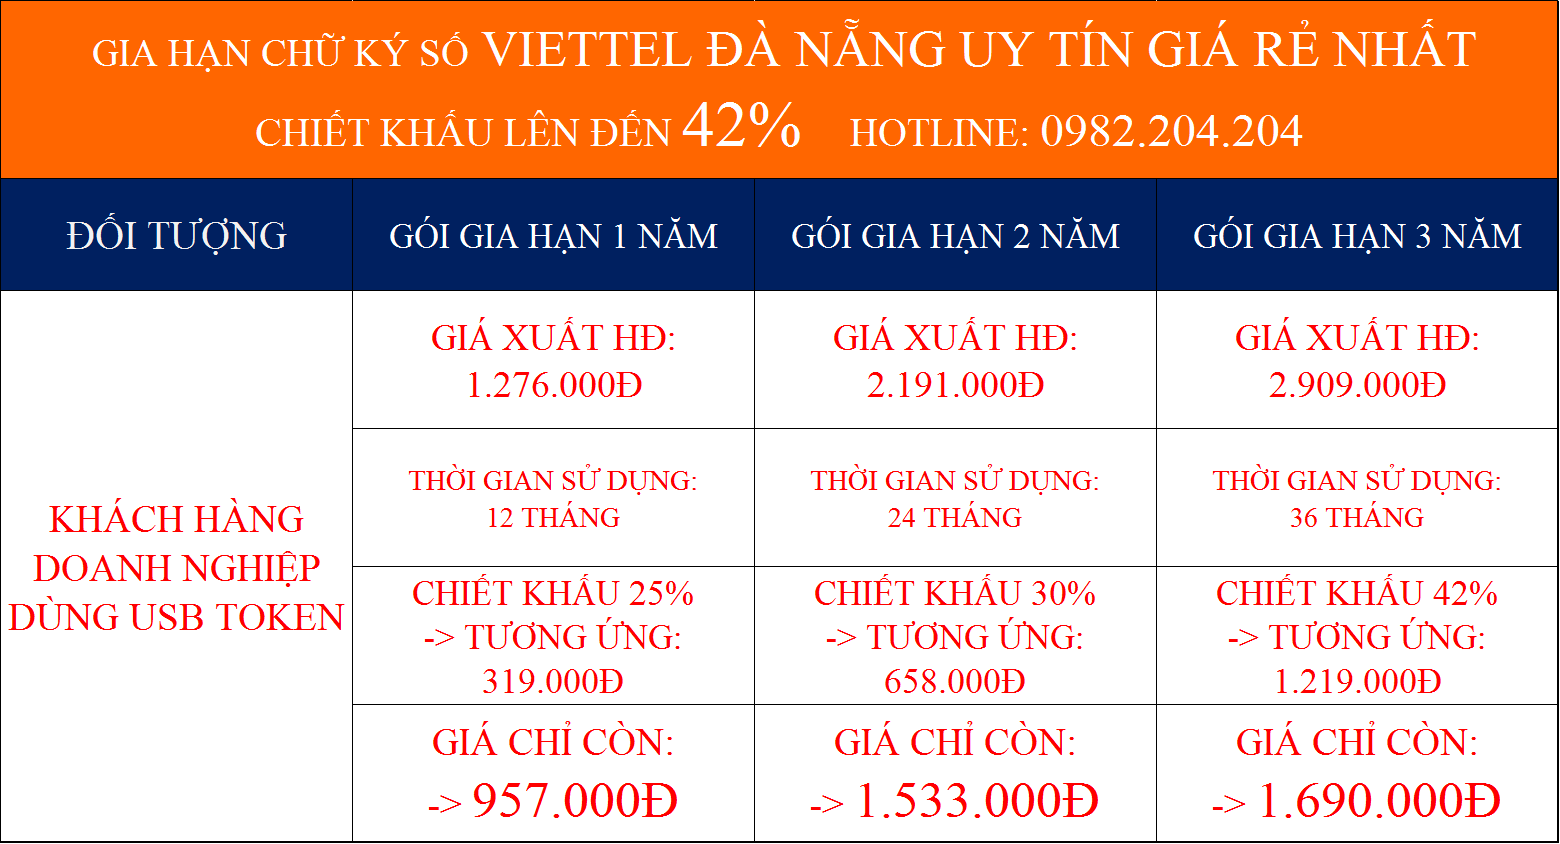 Các gói gia hạn chữ ký số Viettel Đà Nẵng giá rẻ nhất